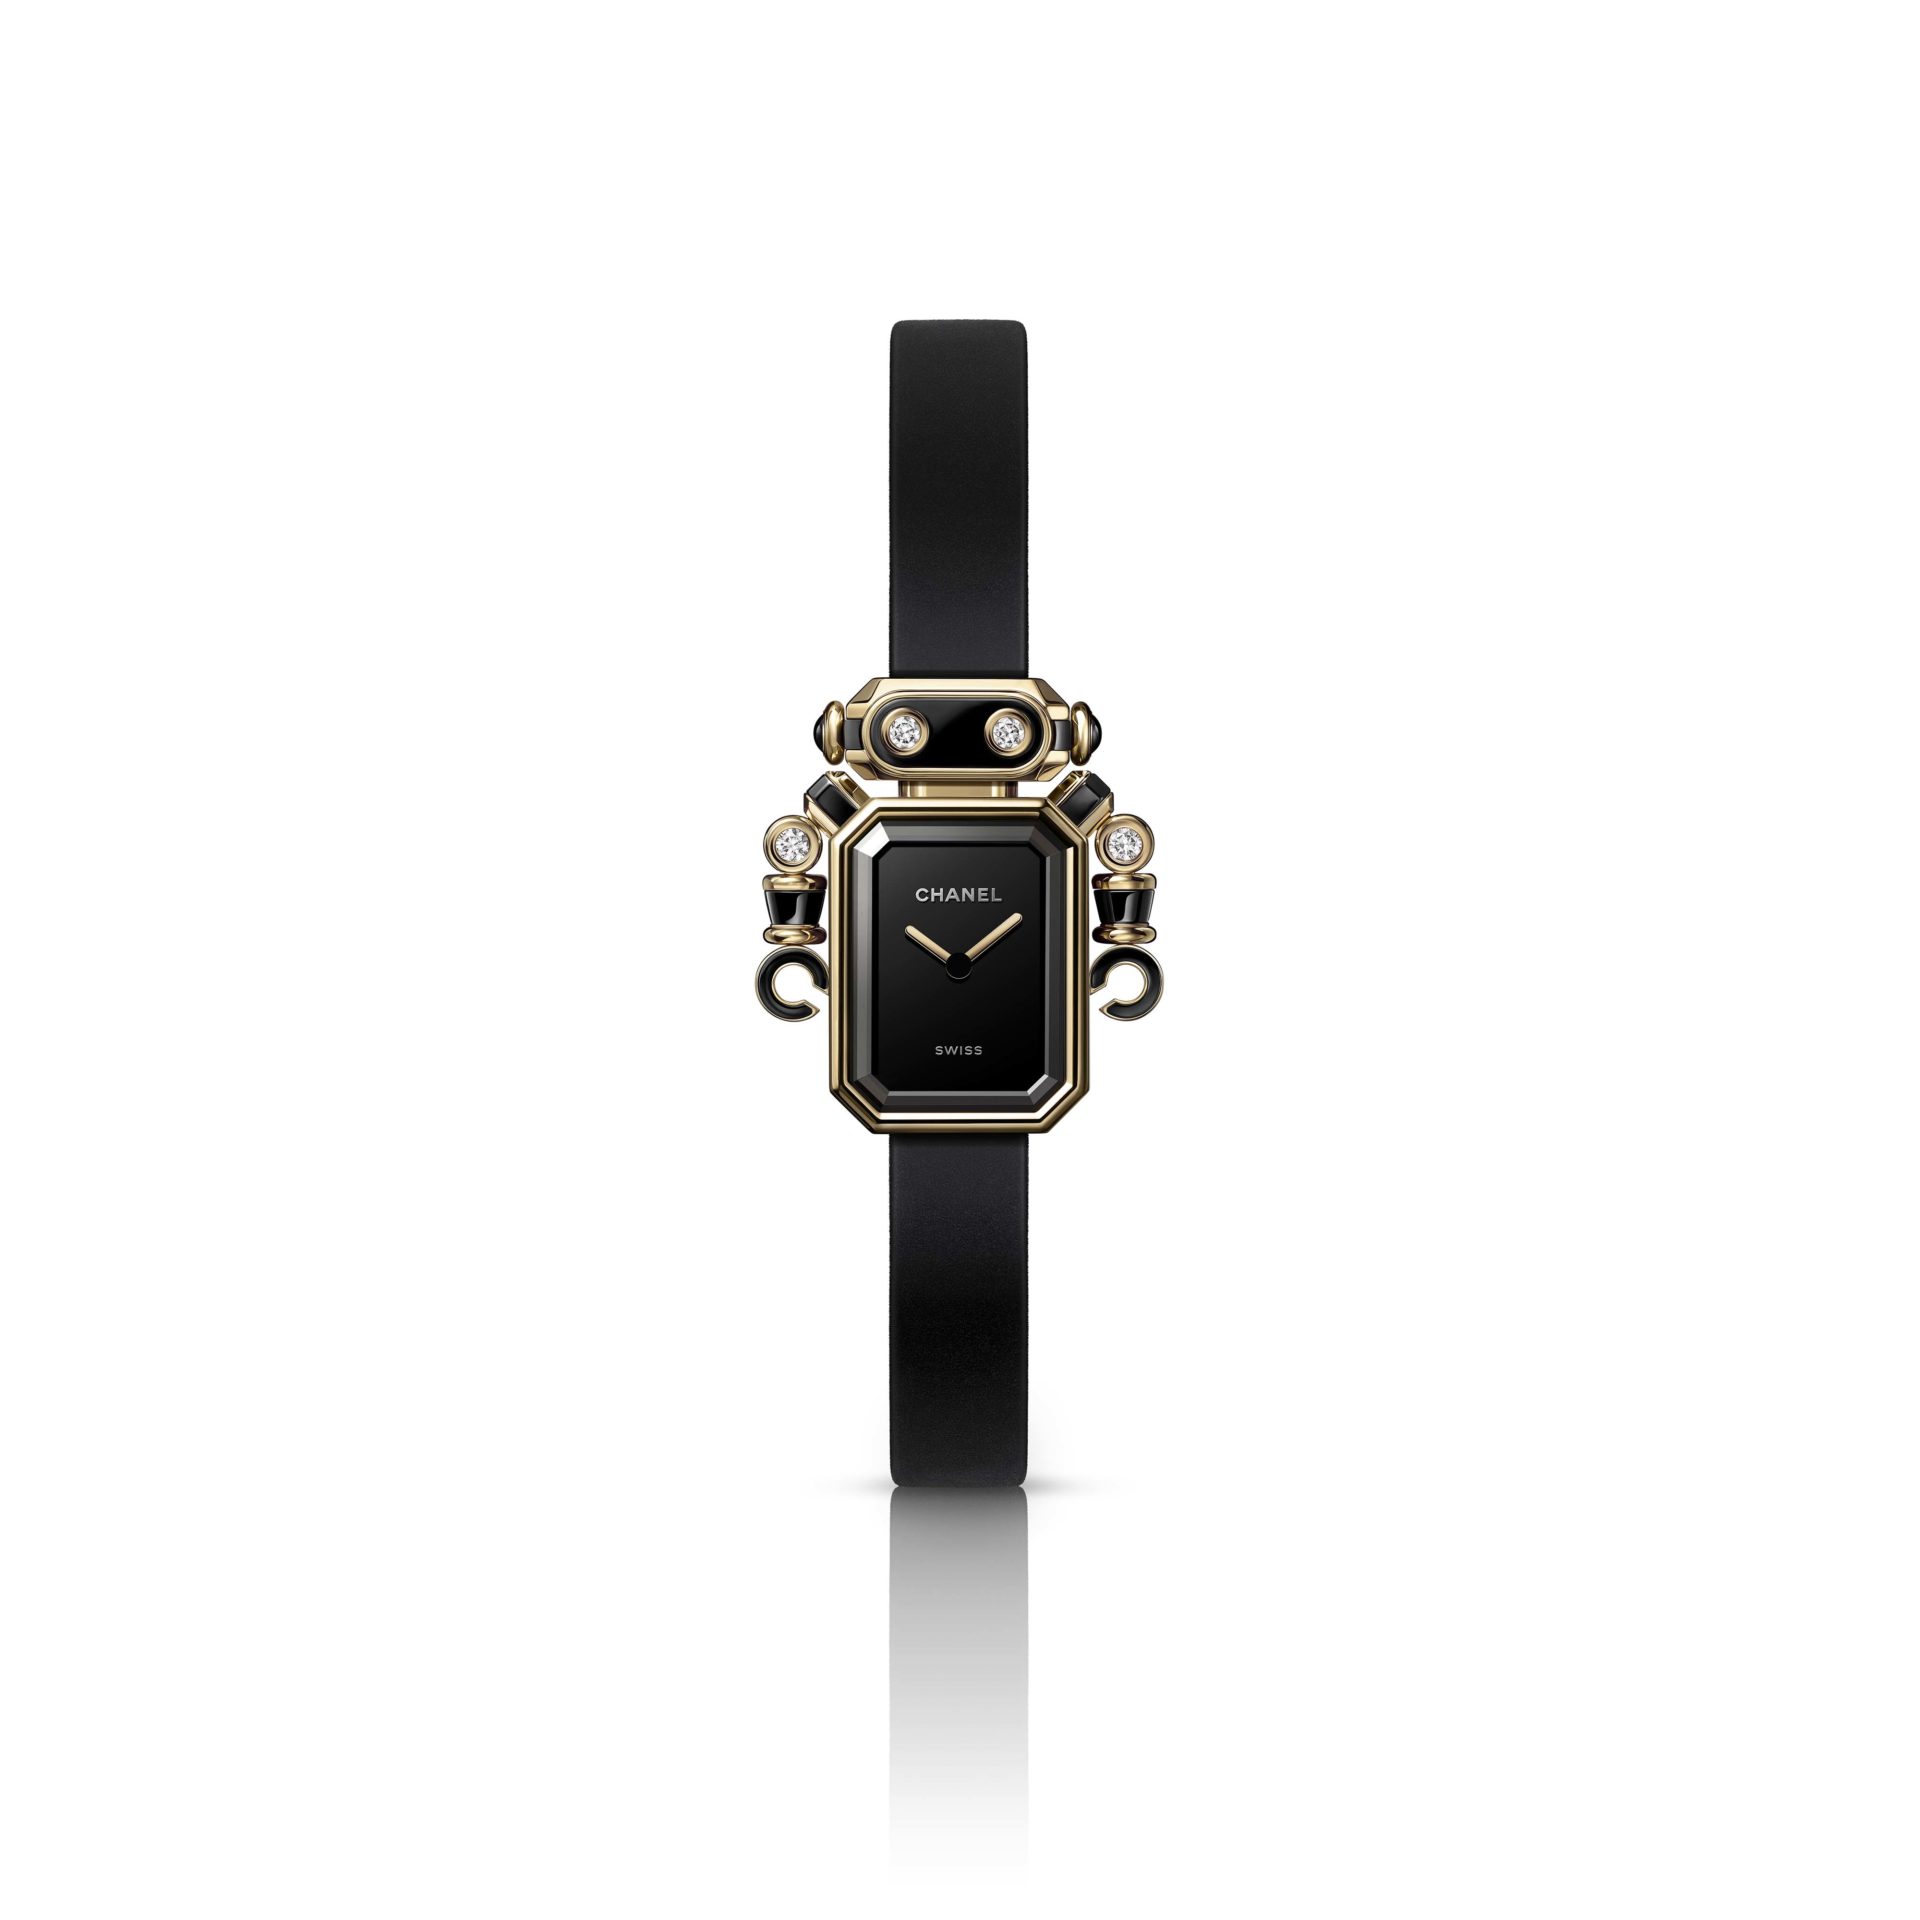 Через вселенную: капсульная коллекция часов Chanel Interstellar